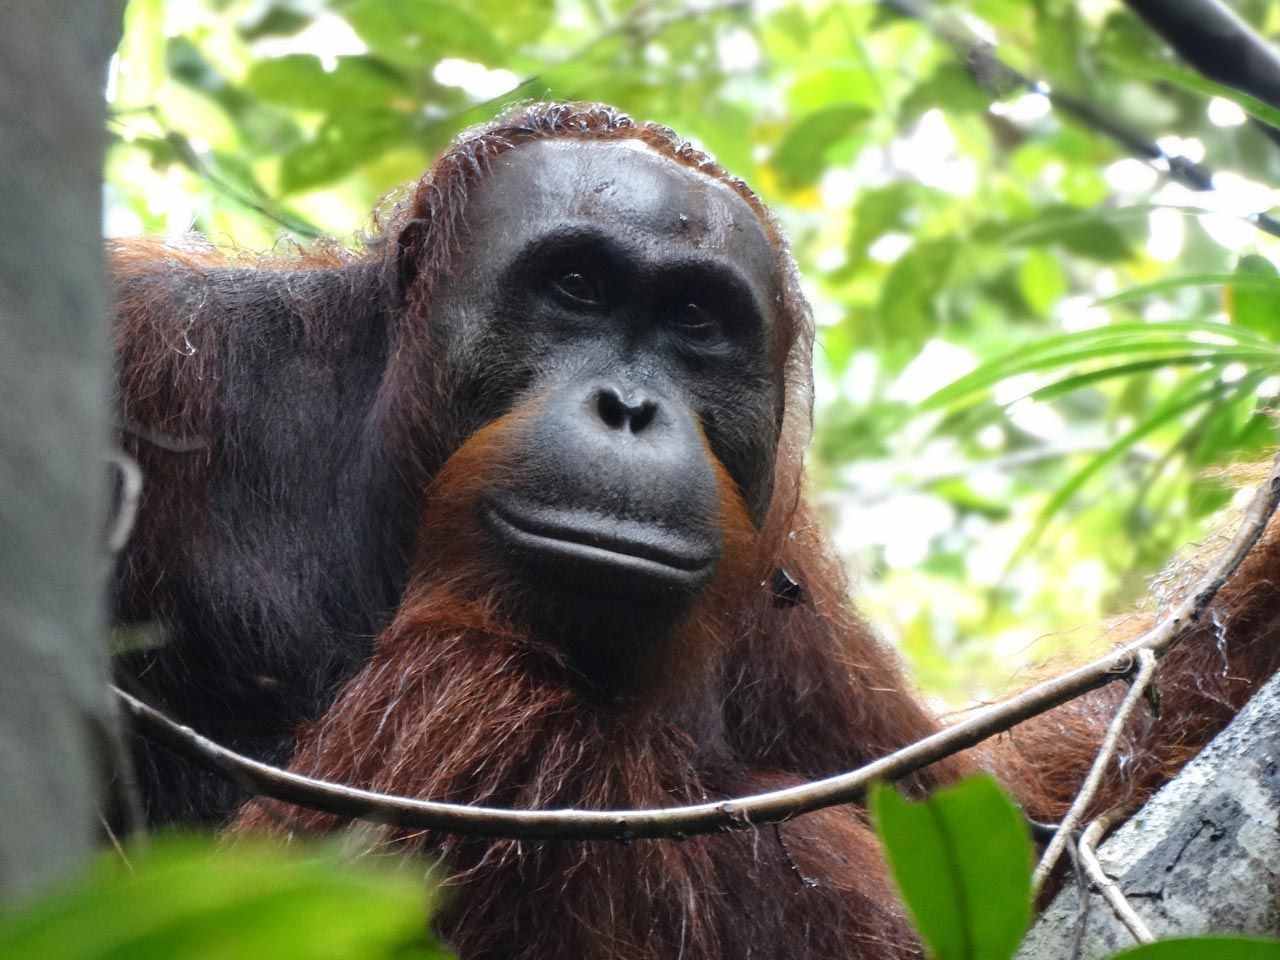 婆罗洲极度濒危的类人猿在水果短缺期间肌肉质量明显降低